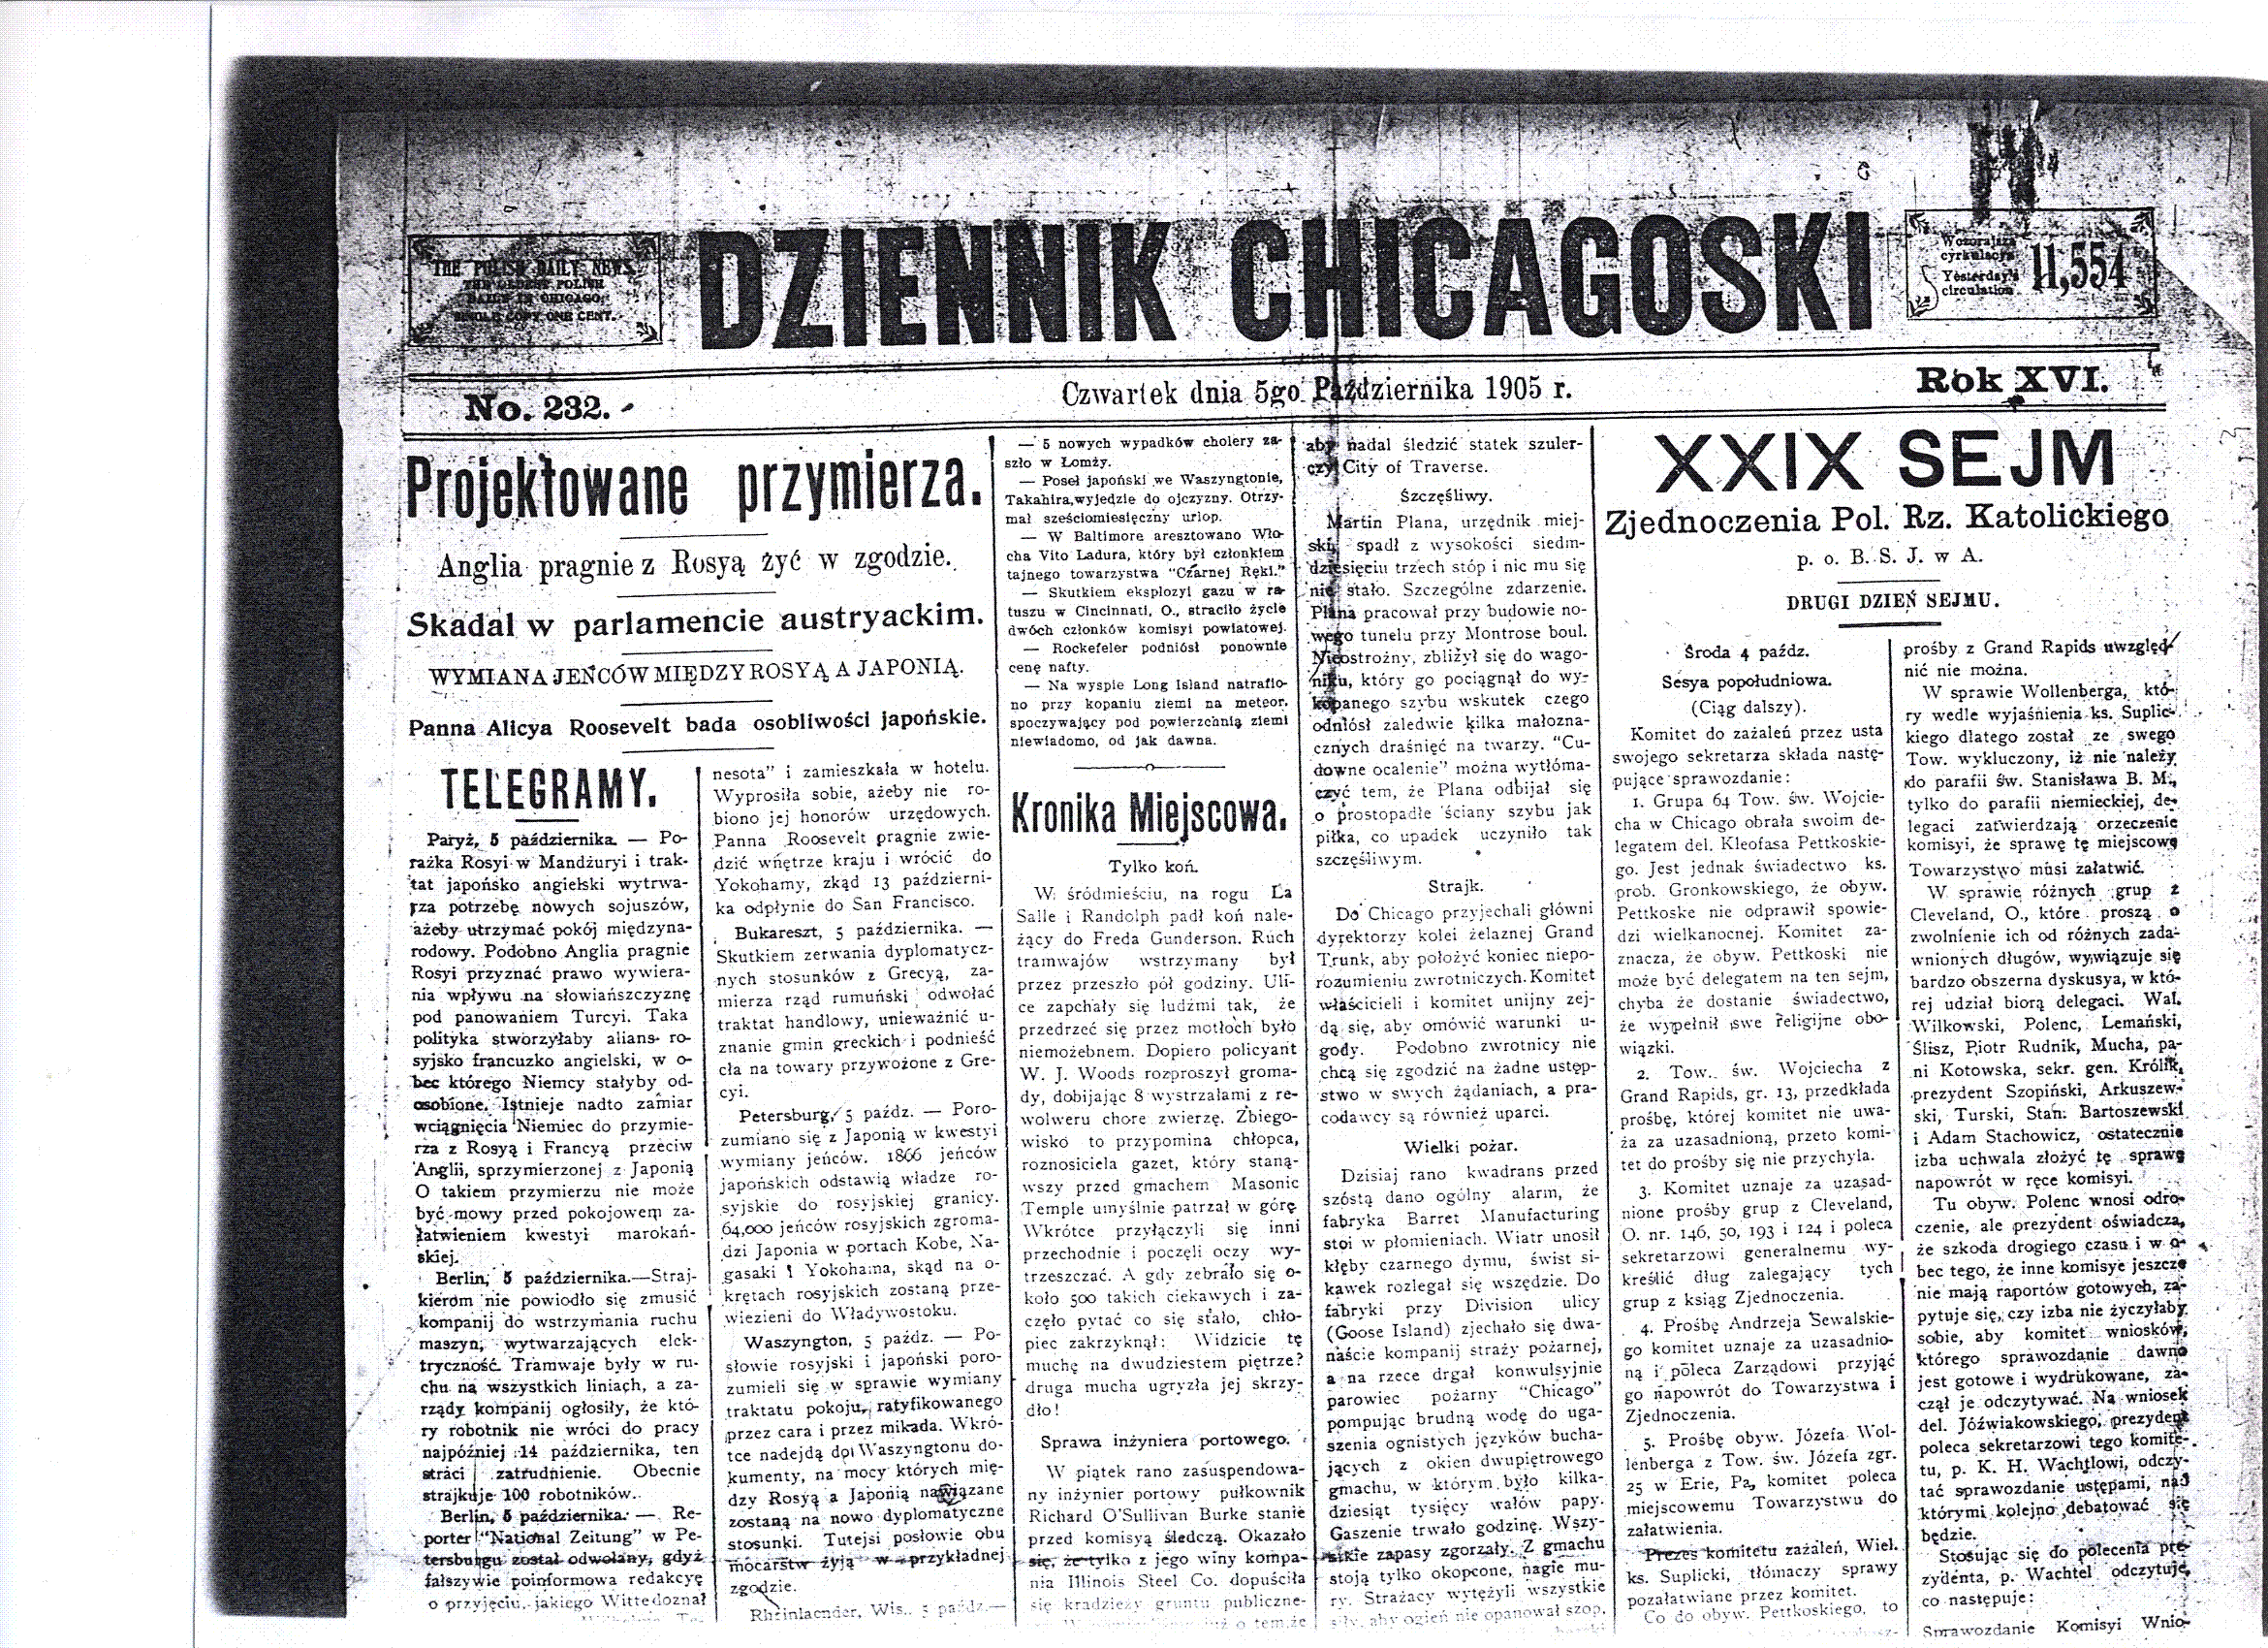 5 October 1905